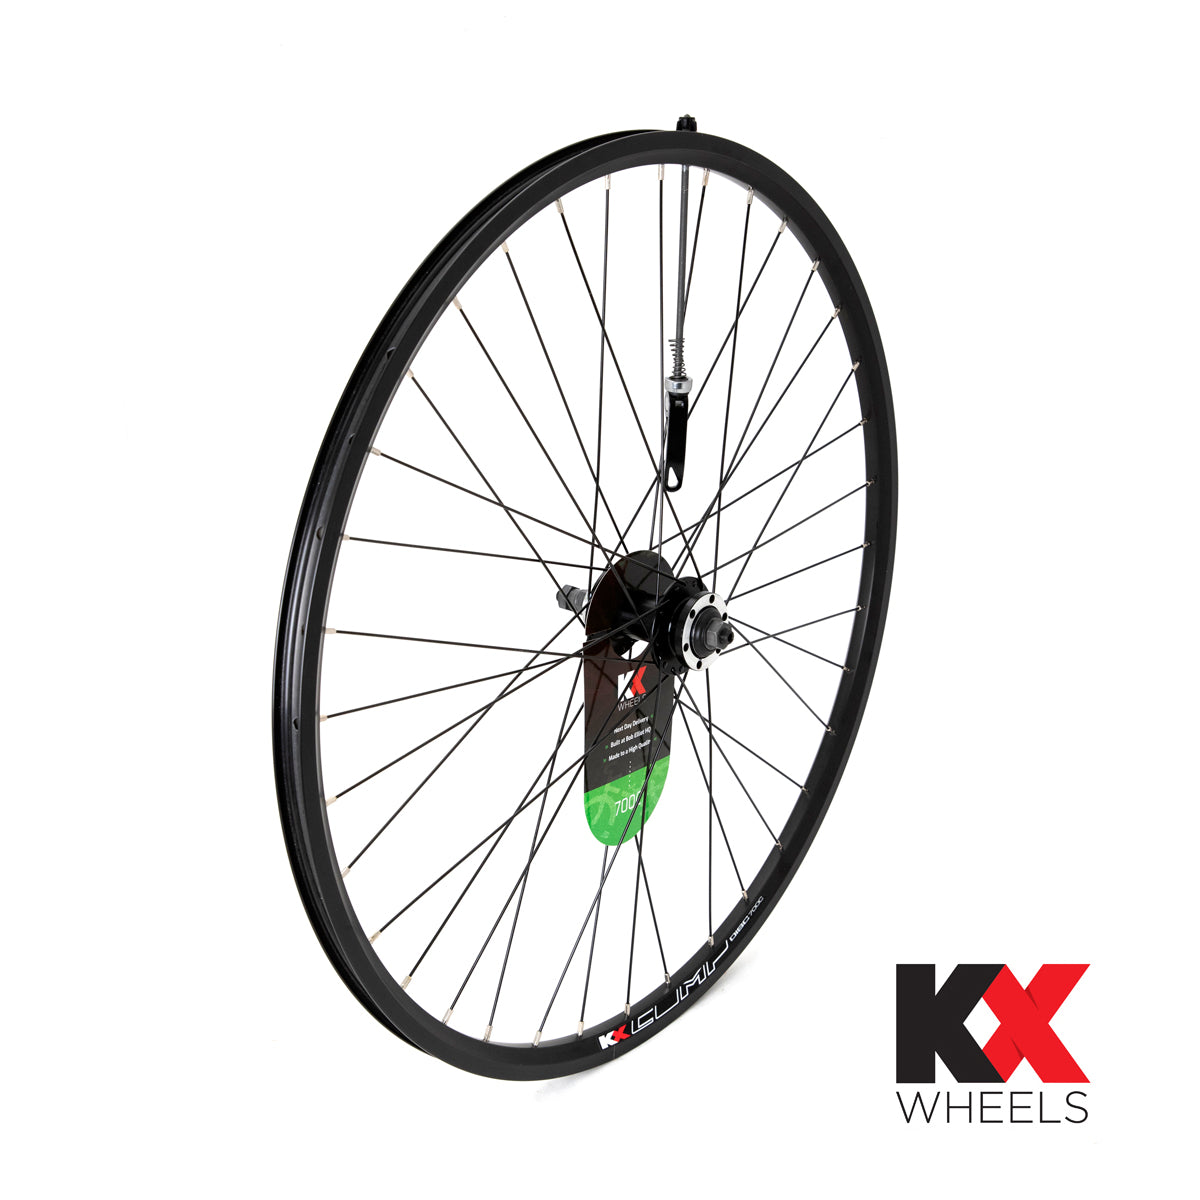 KX Wheels Hybrid Double Wall QR Disc Screw On 700c Rear Bike Wheel